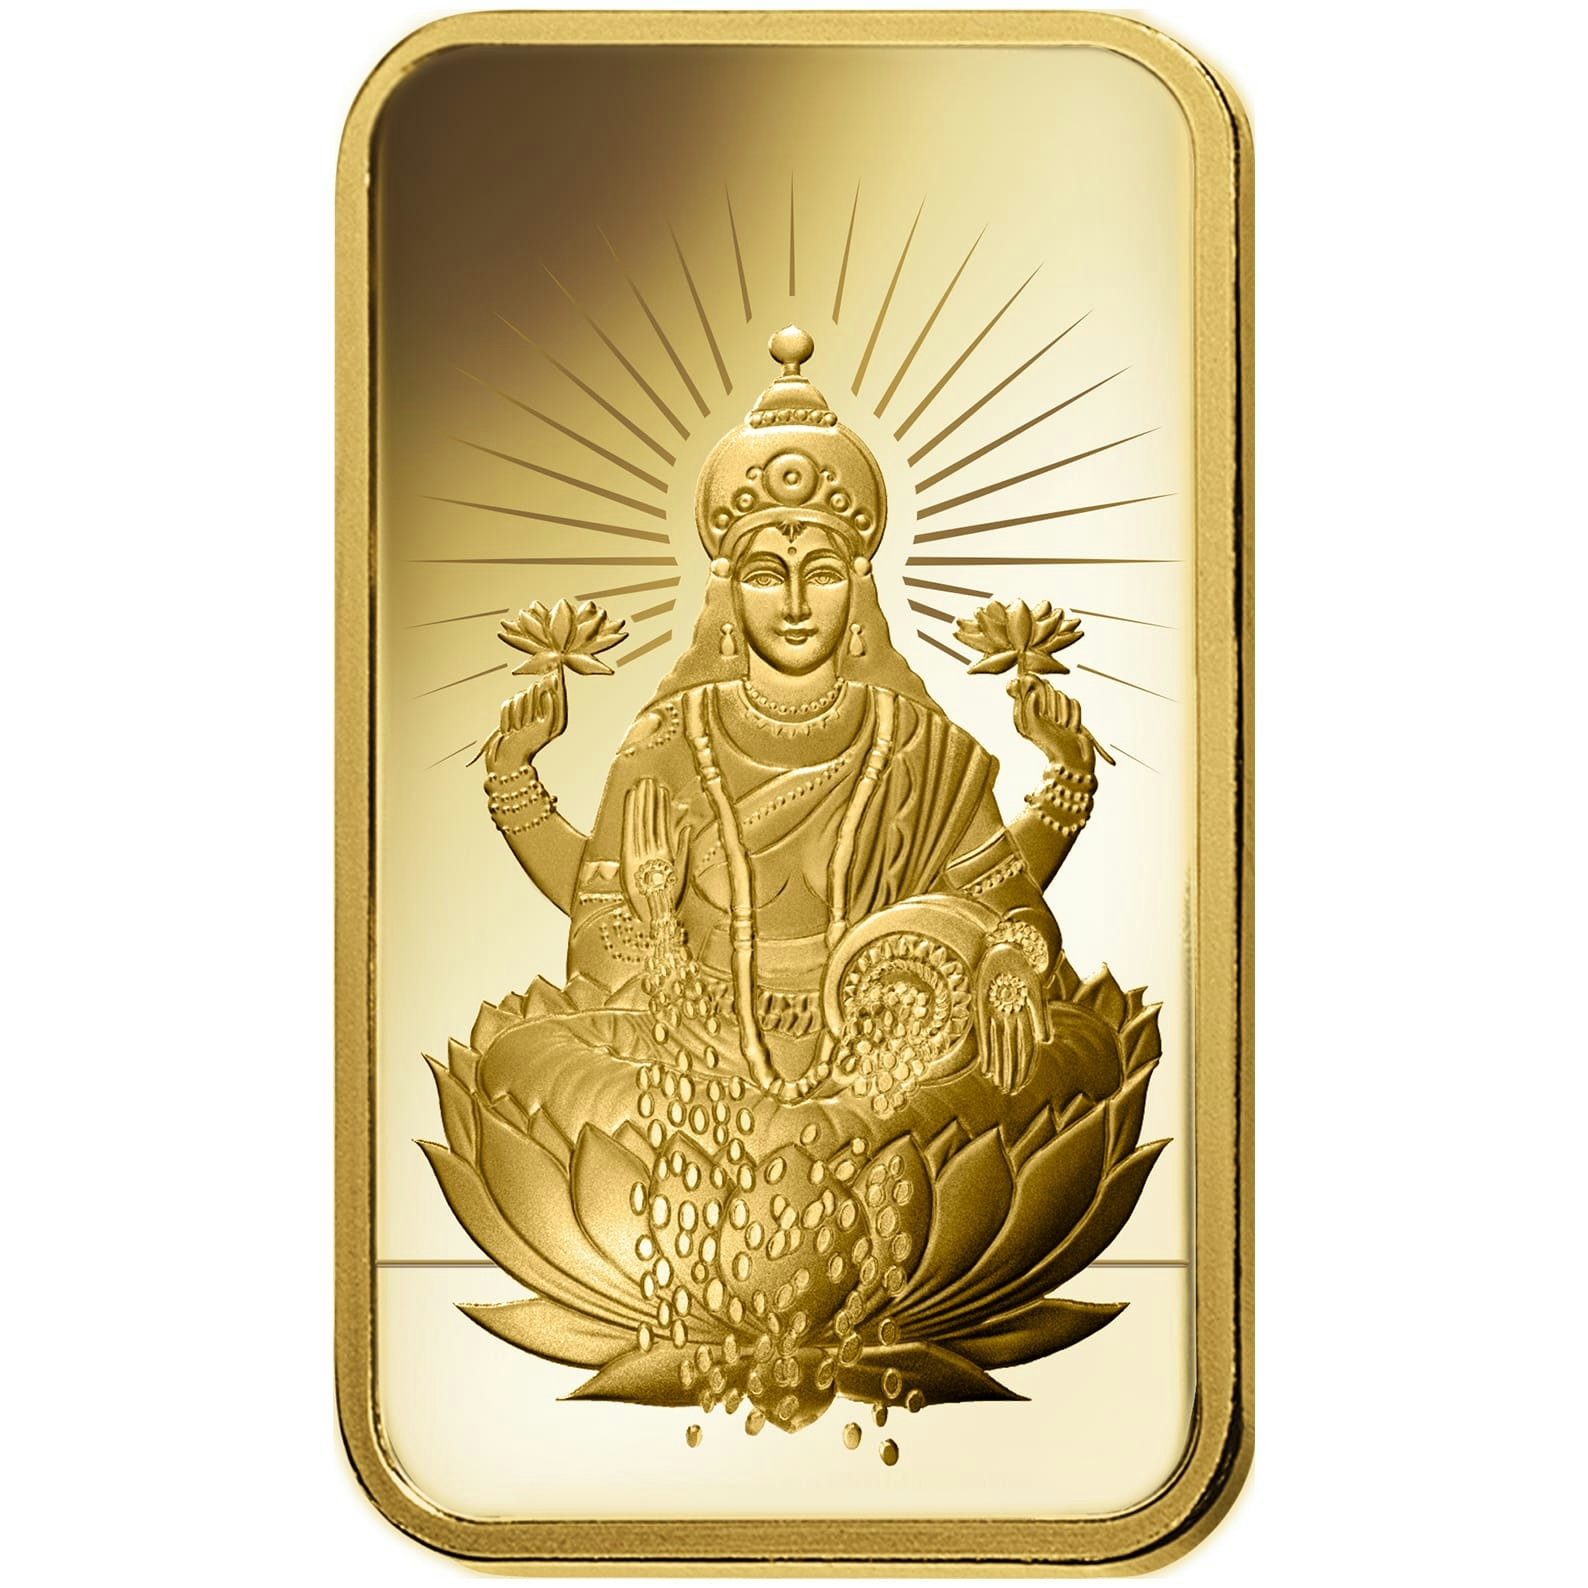 Compare oro, 5 grammi d'oro puro Lakshmi - PAMP Svizzera - Front